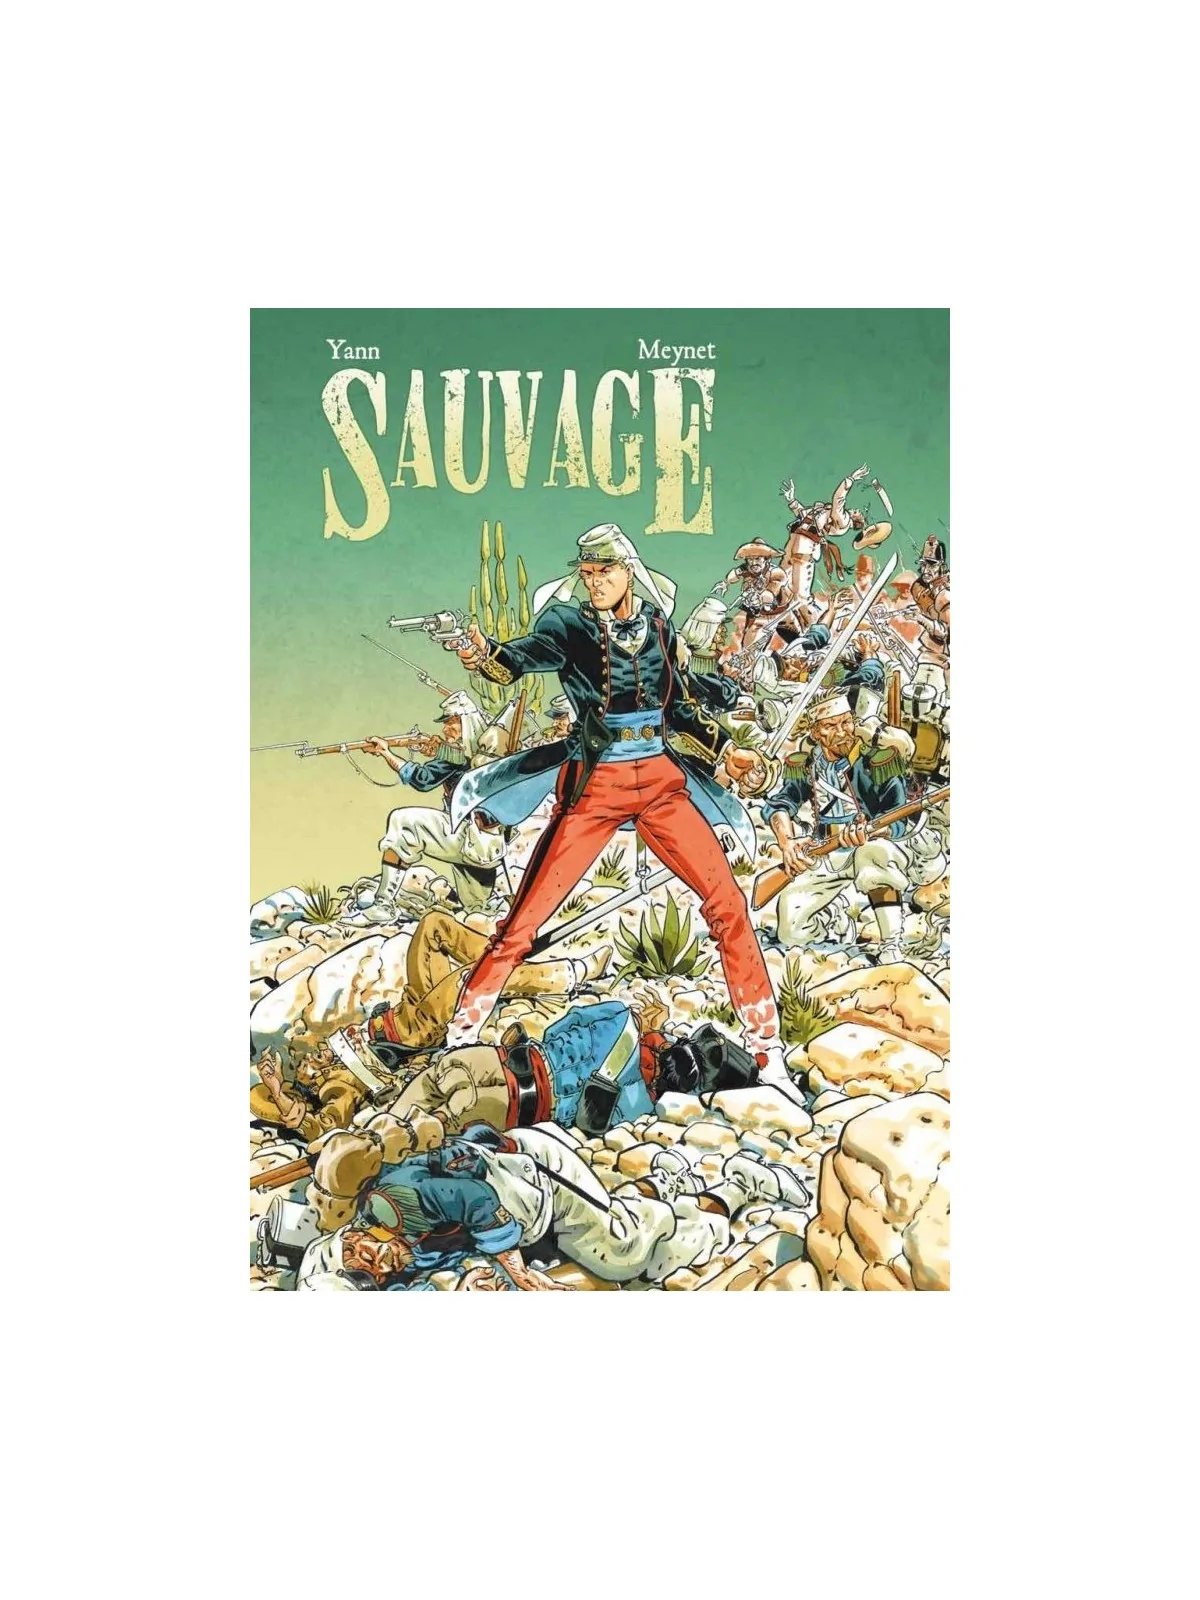 Comprar Sauvage 01 barato al mejor precio 33,25 € de Yermo Ediciones